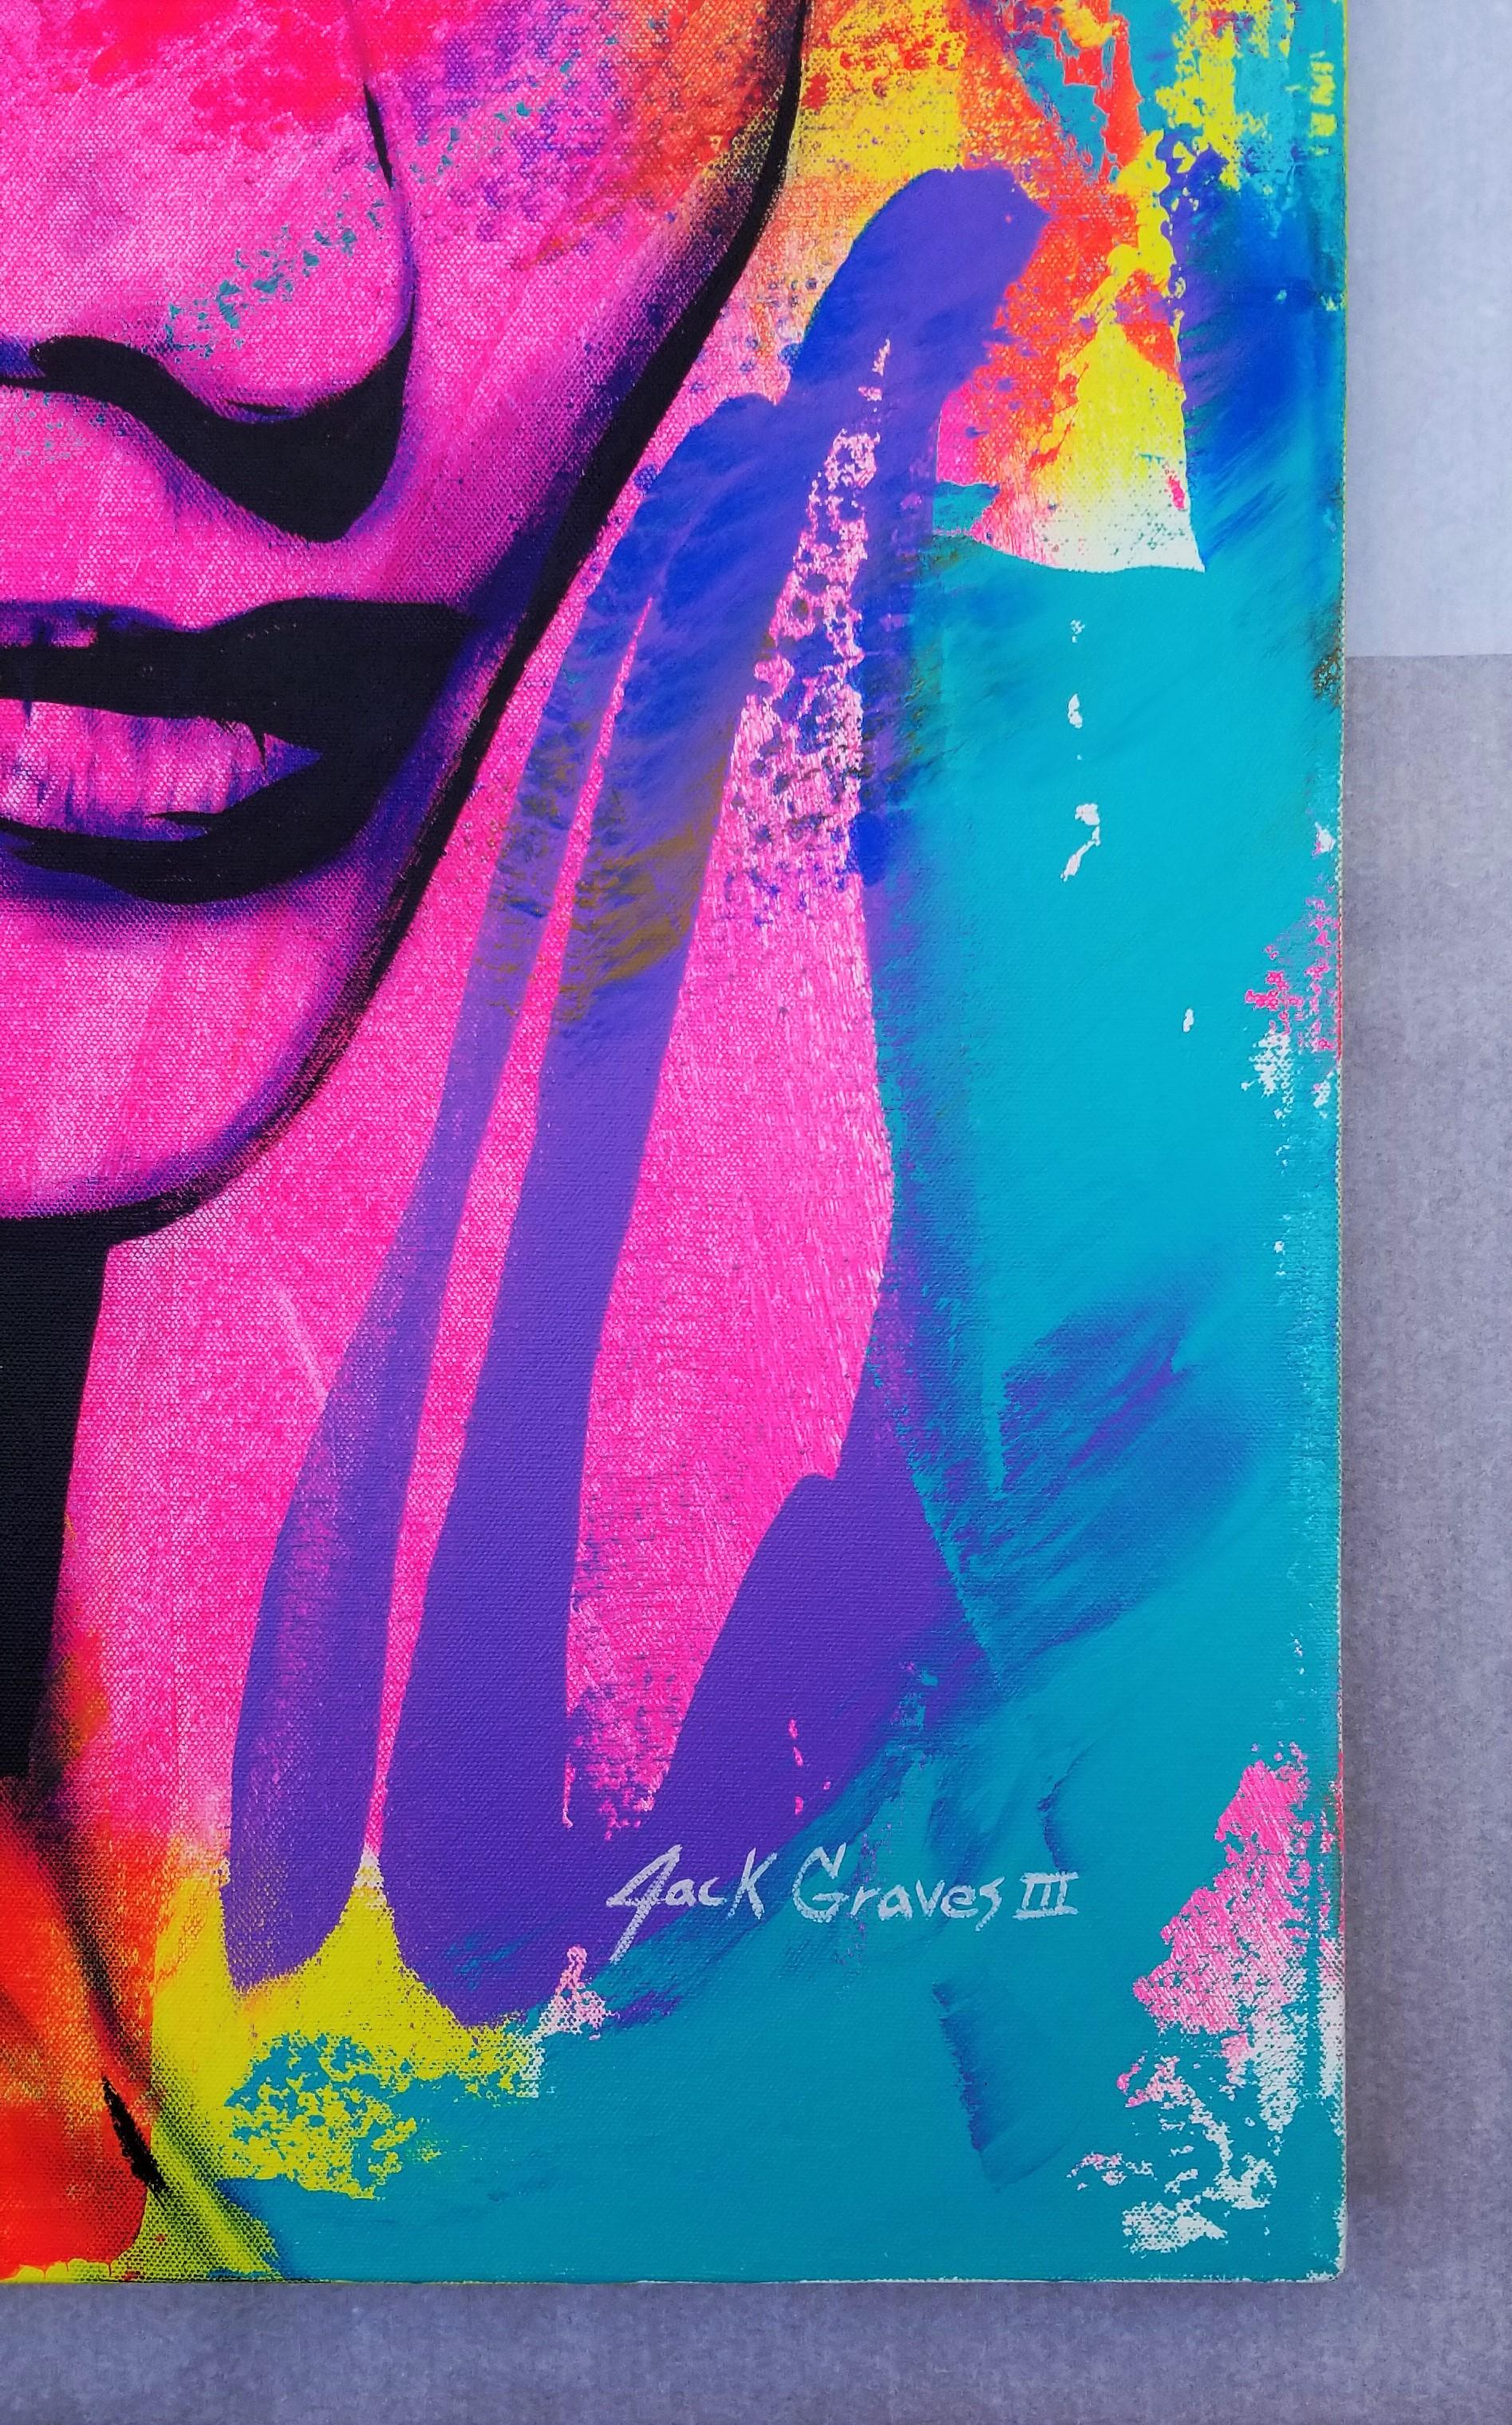 Cate Blanchett Icon III /// Contemporary Street Pop Art Schauspielerin Model Malerei (Violett), Portrait Painting, von Jack Graves III